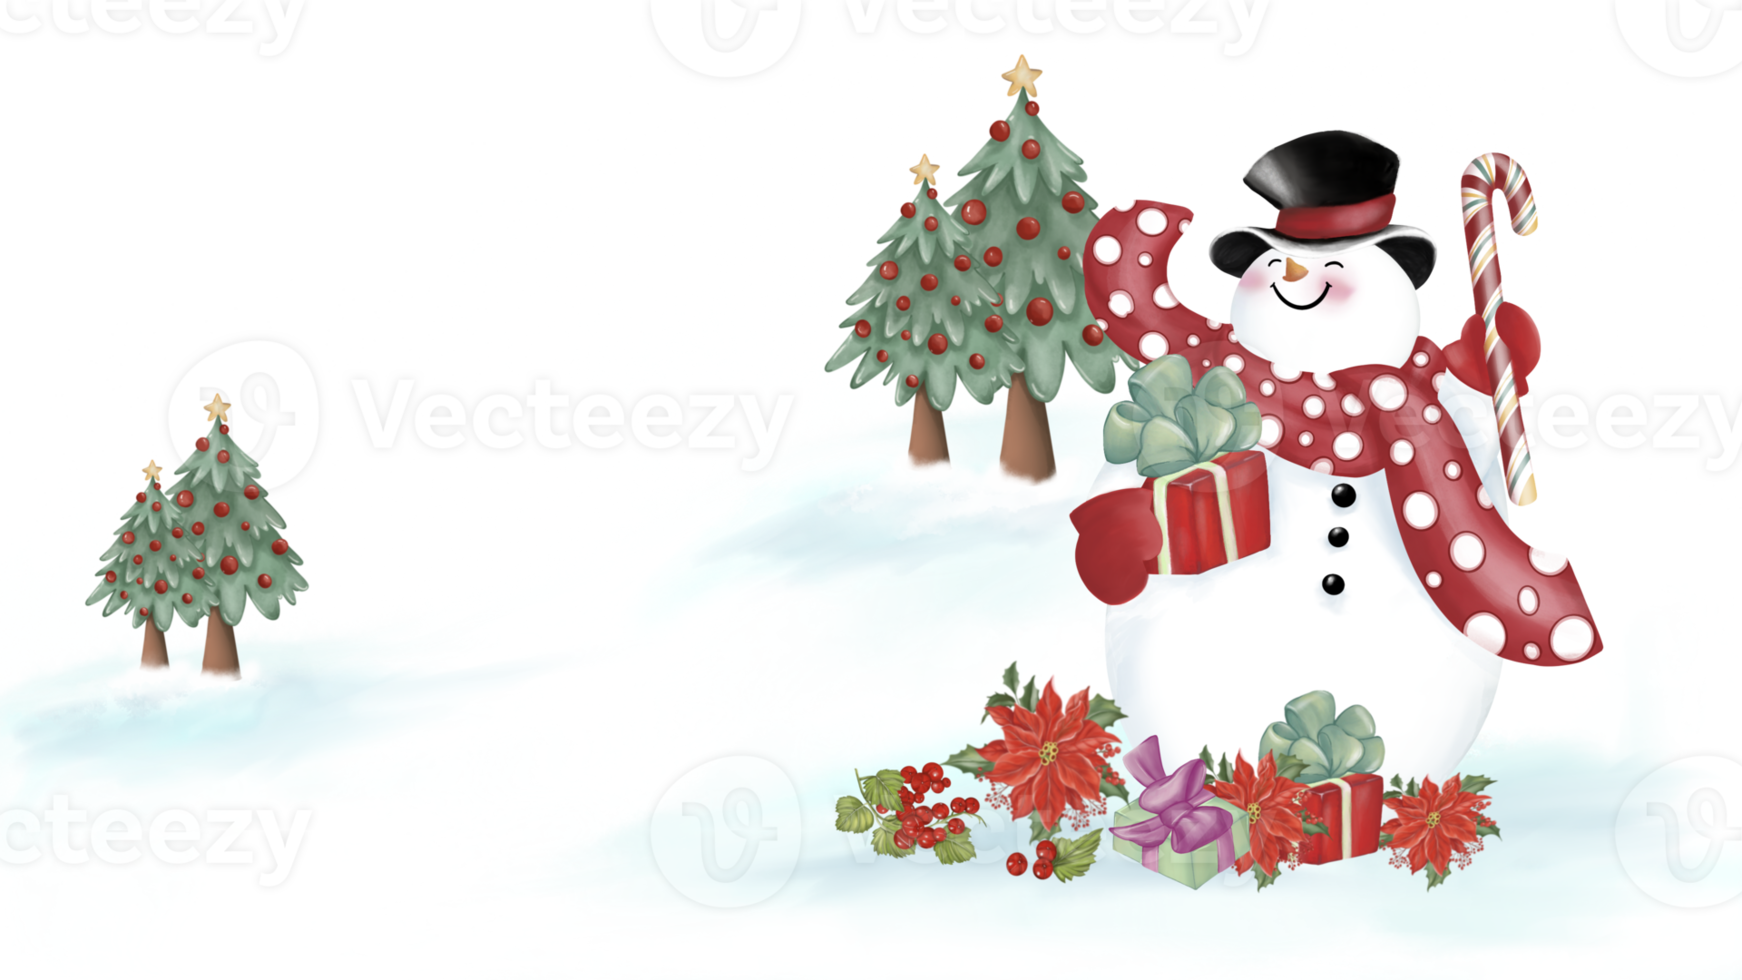 boneco de neve com um chapéu preto e lenço vermelho com padrão de círculo está segurando uma caixa de presente e um bastão de doces. caixas de presente, flores de natal e bagas na neve. árvores de natal atrás. imagem em aquarela. png